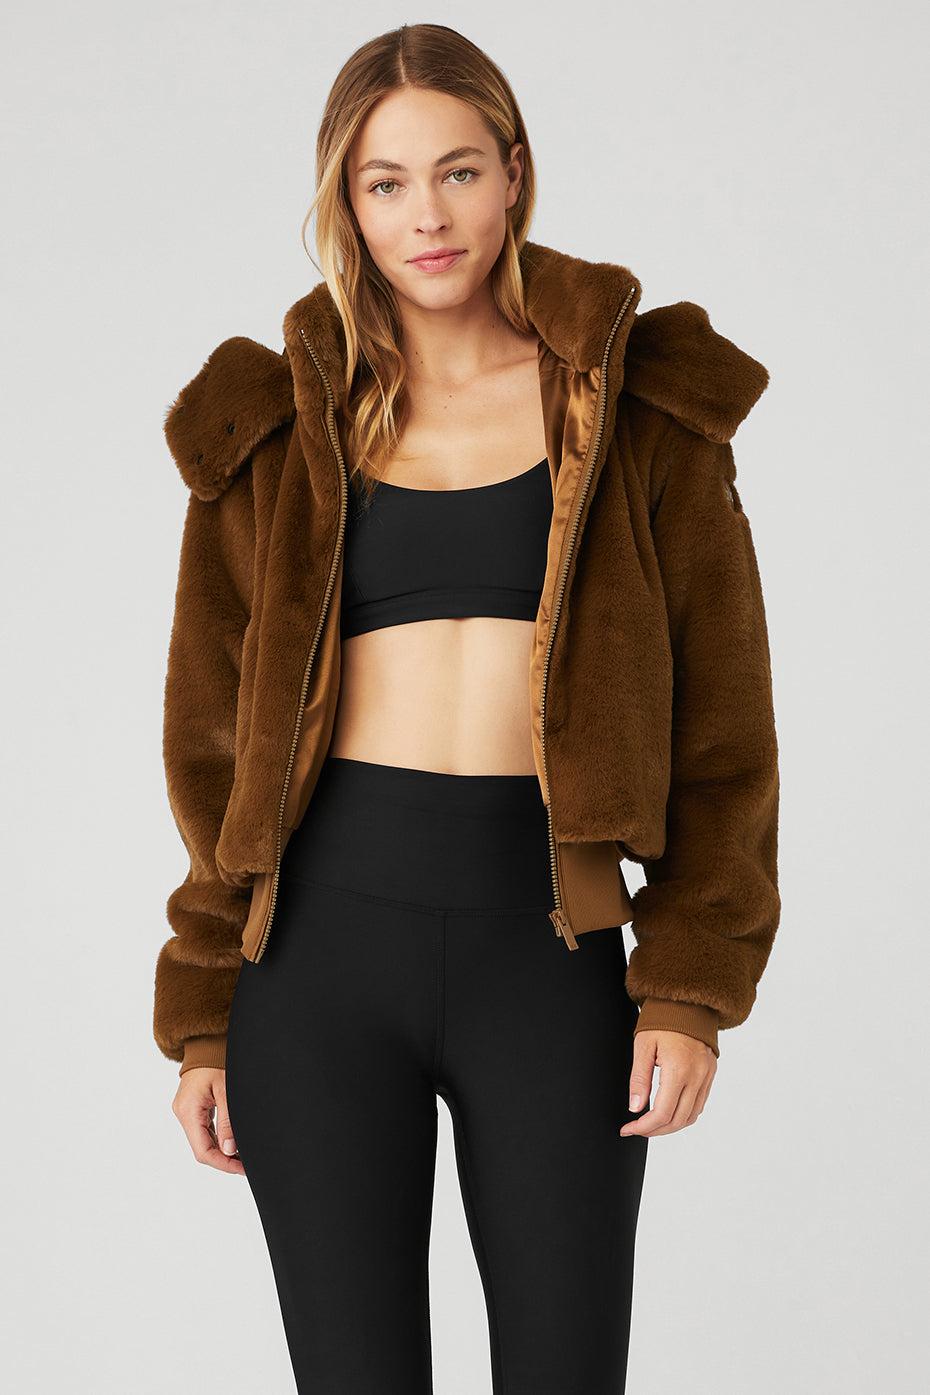 Alo Yoga Faux Fur Foxy Jacket in Black | Lyst